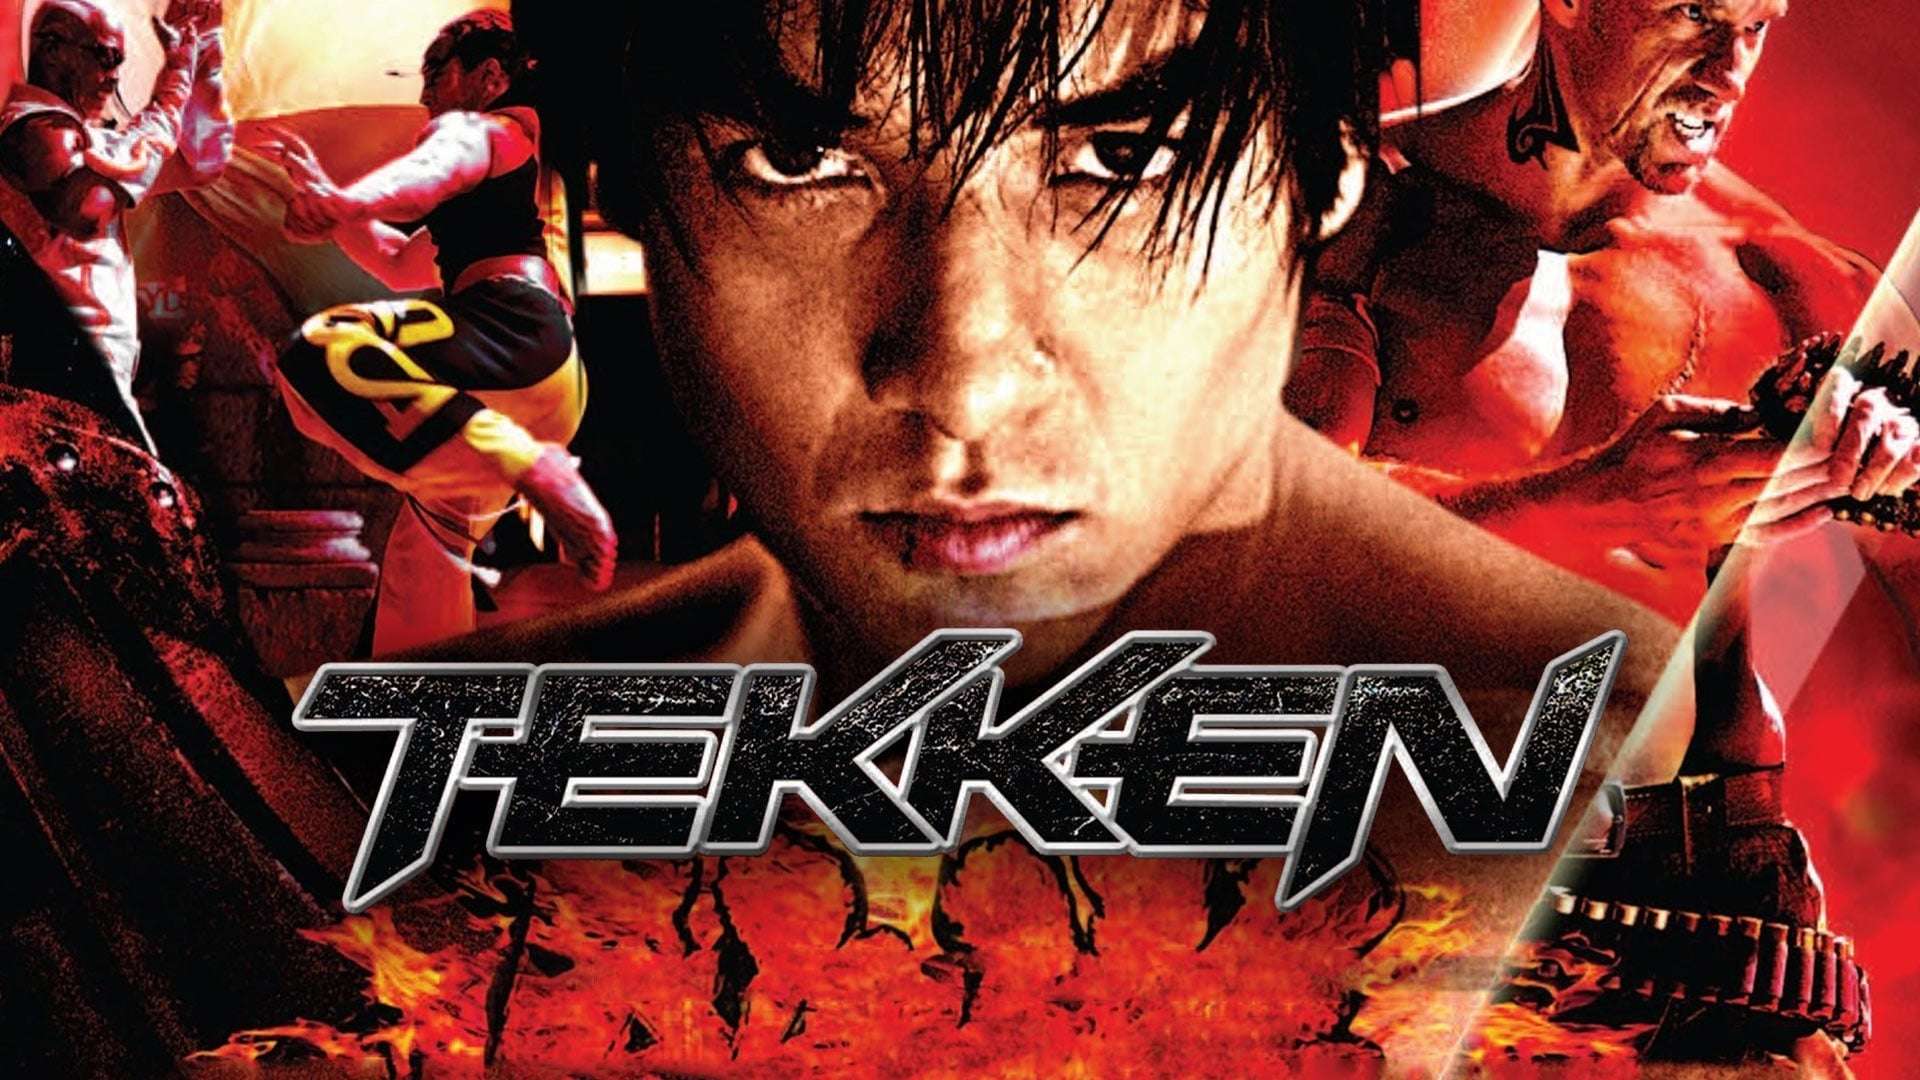 watch tekken 2 movie online